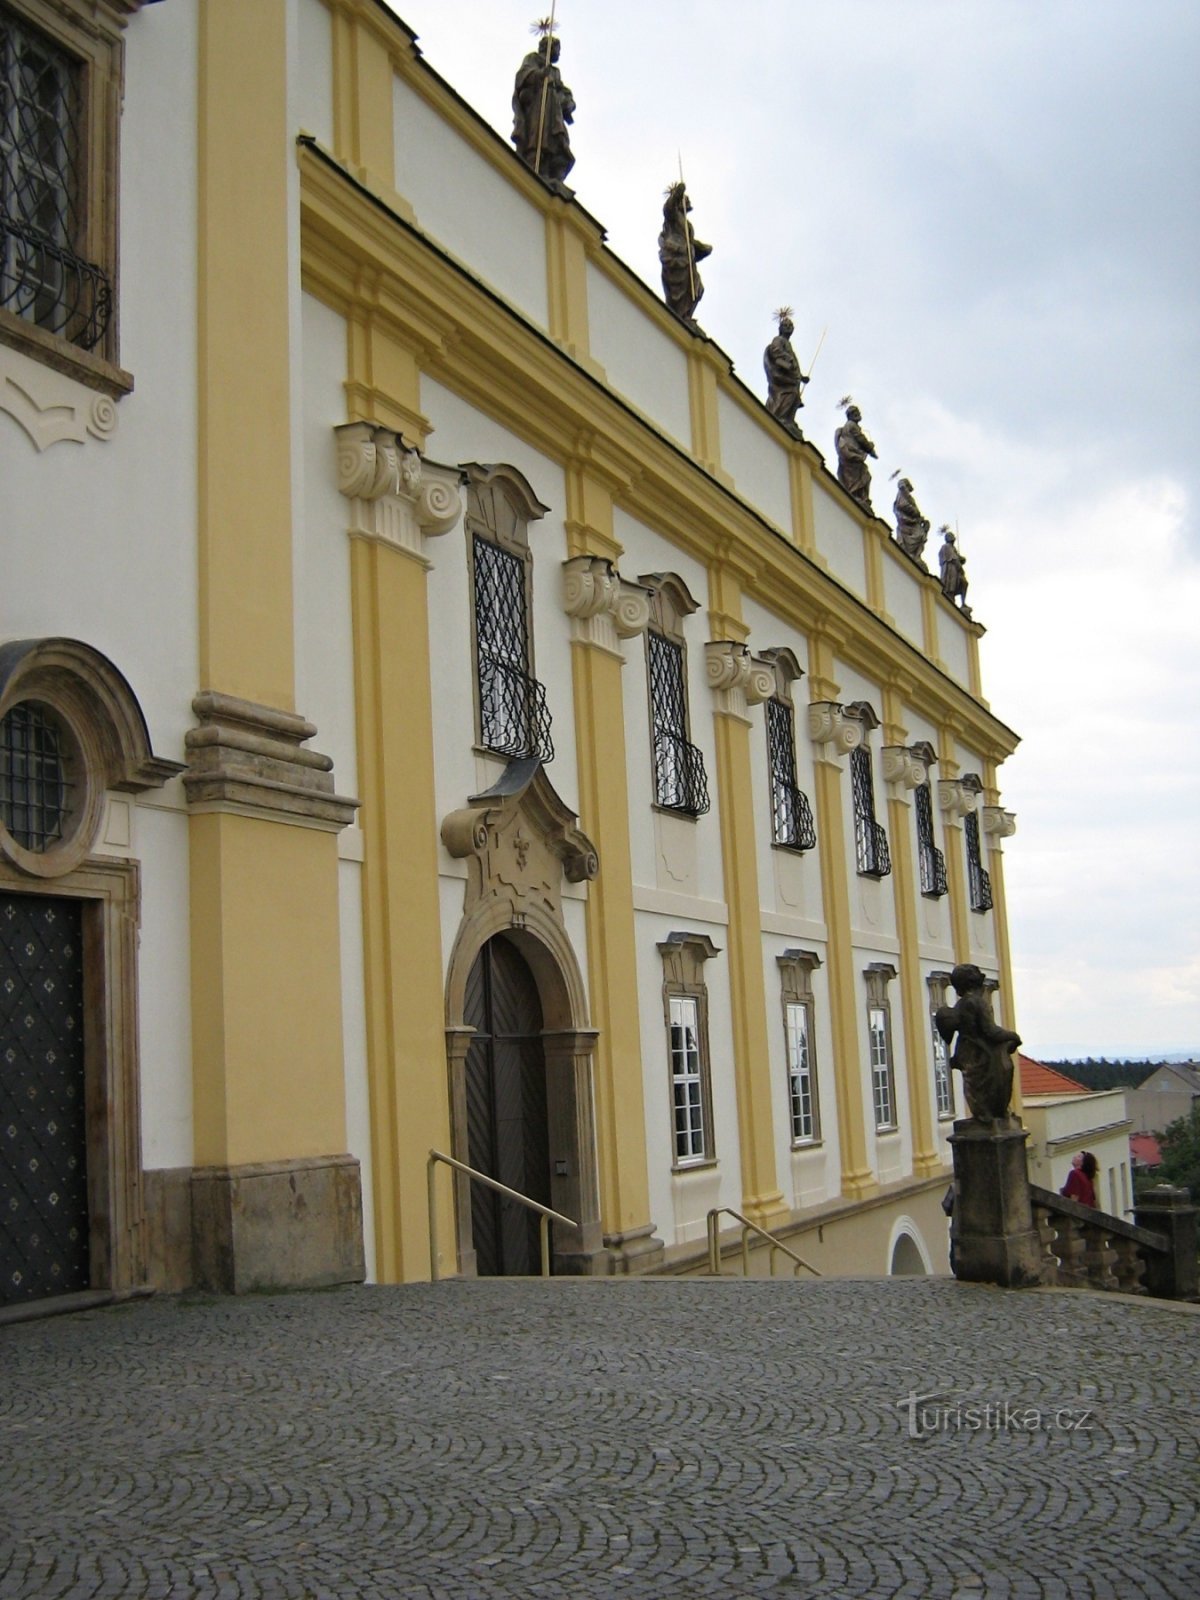 Olomouc - Svatý Kopeček - basilique et sentier didactique